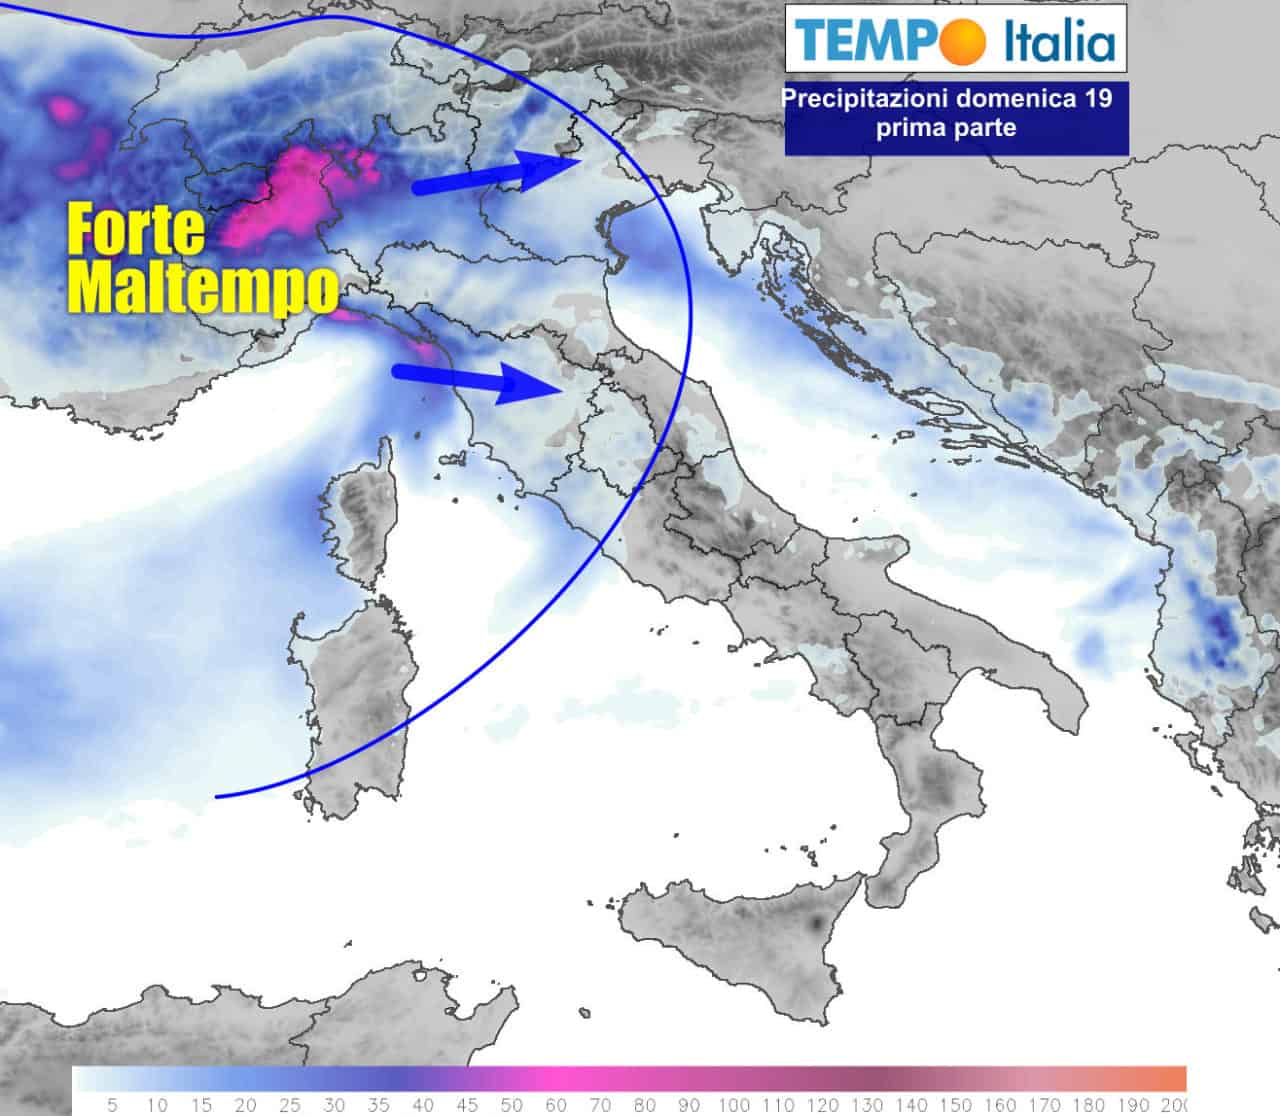 Torna il rischio nubifragi su alcune aree del Nord Italia